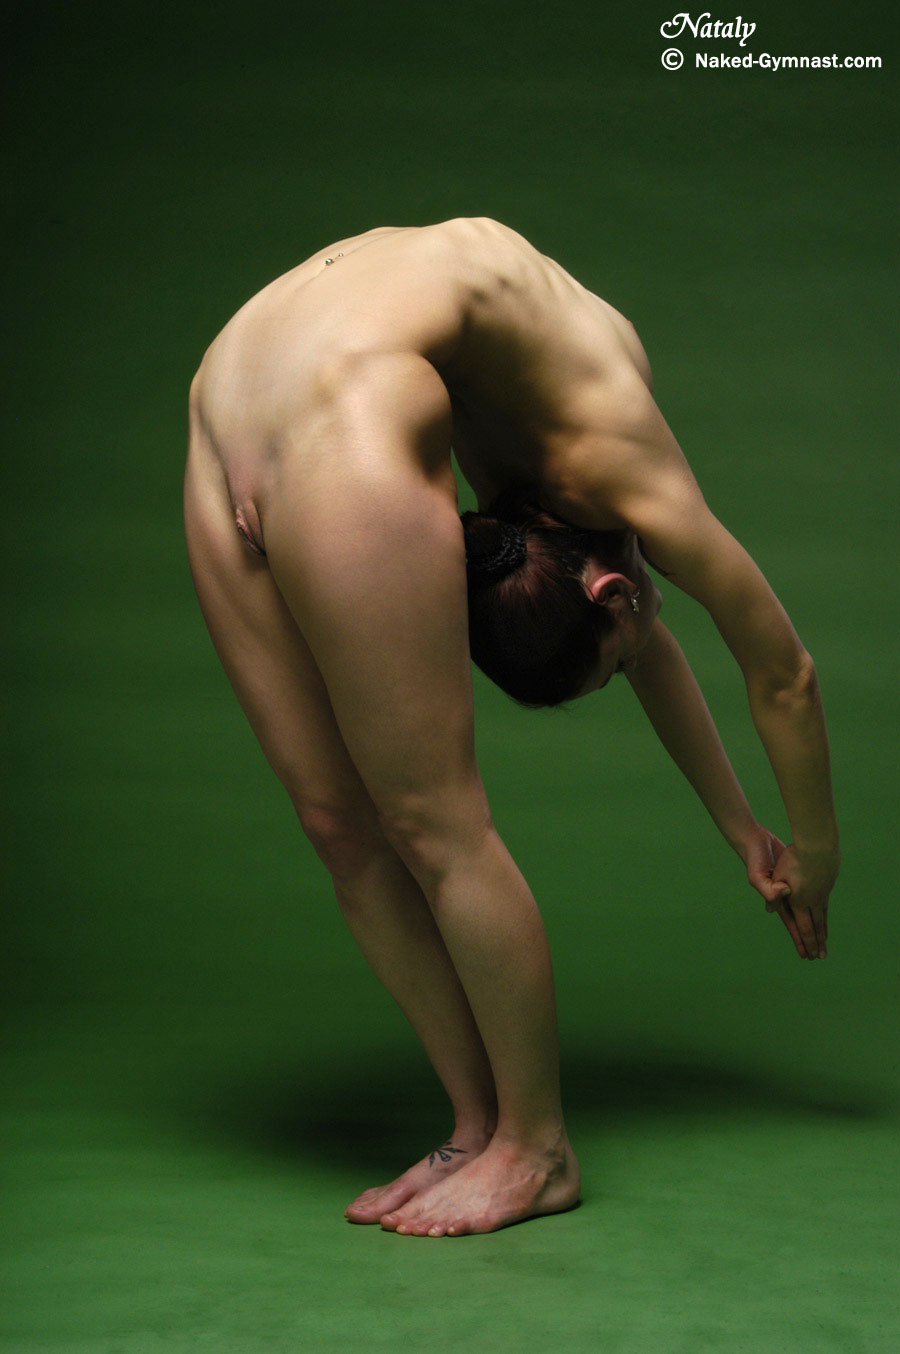 Nude gymnastics